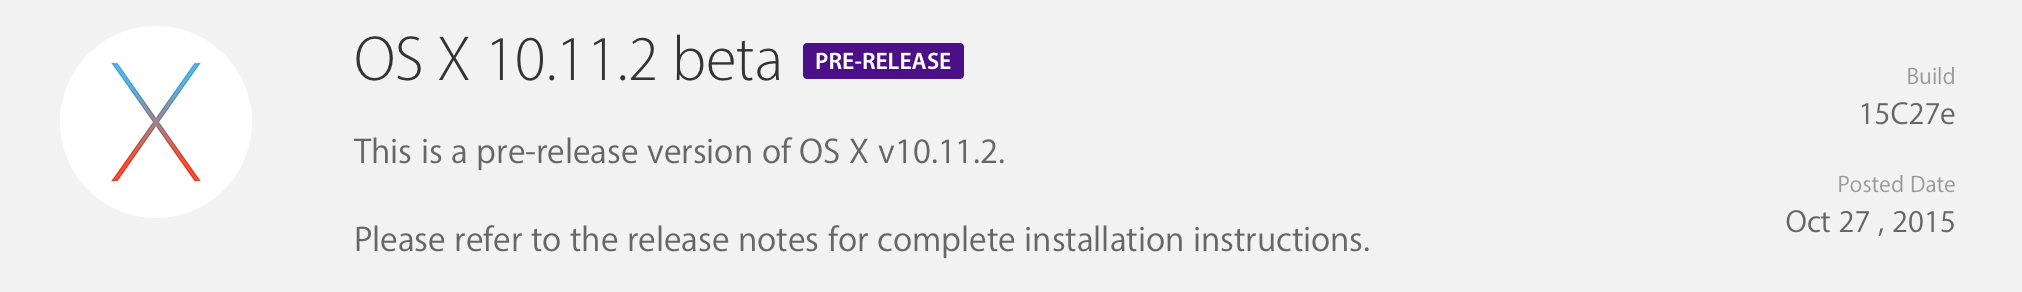 OS X El Capitan 10.11.2 Dev Update Delta(build 15C27e)